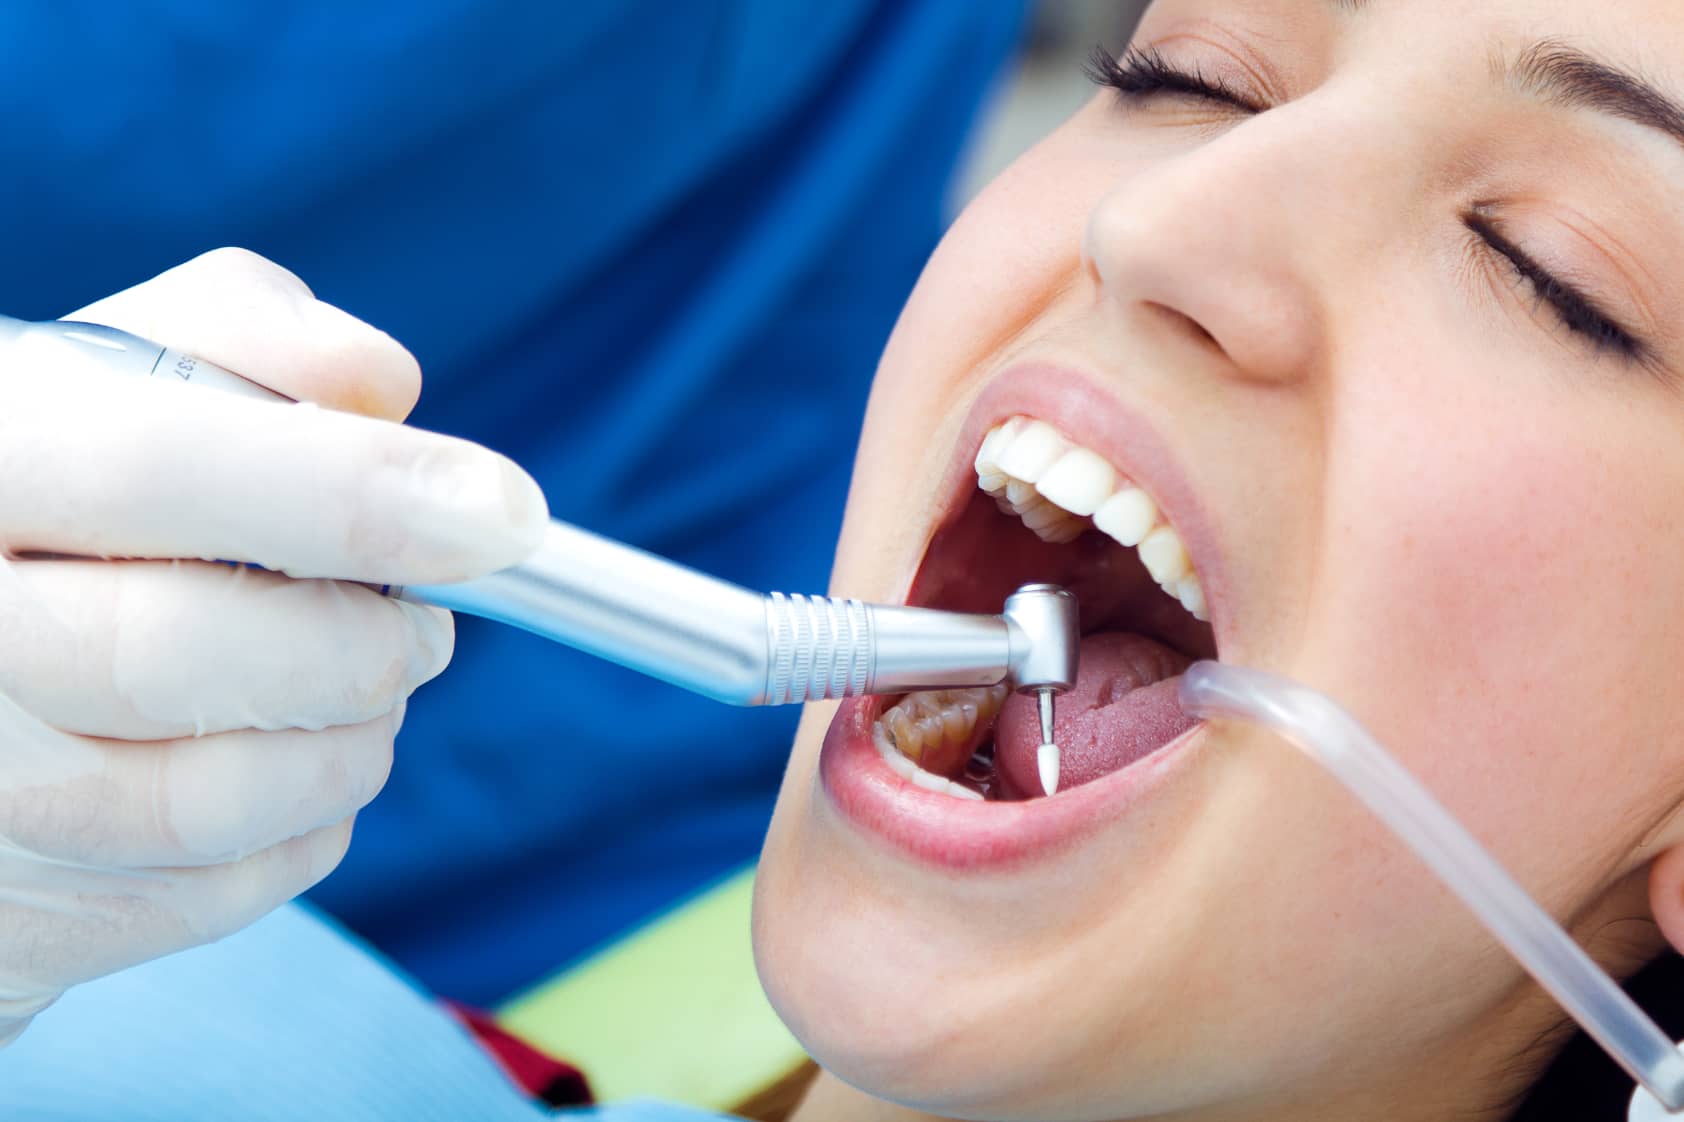 Endodoncia - La endodoncia es un procedimiento dental conocido habitualmente para “matar el nervio”. Consiste en eliminar la parte profunda del diente cuando se encuentra lesionado o infectado. La finalidad de este procedimiento es limpiar el diente por dentro y rellenarlo de un material inerte. 
            El procedimiento se hace bajo anestesia local, por lo cual no resulta doloroso. 